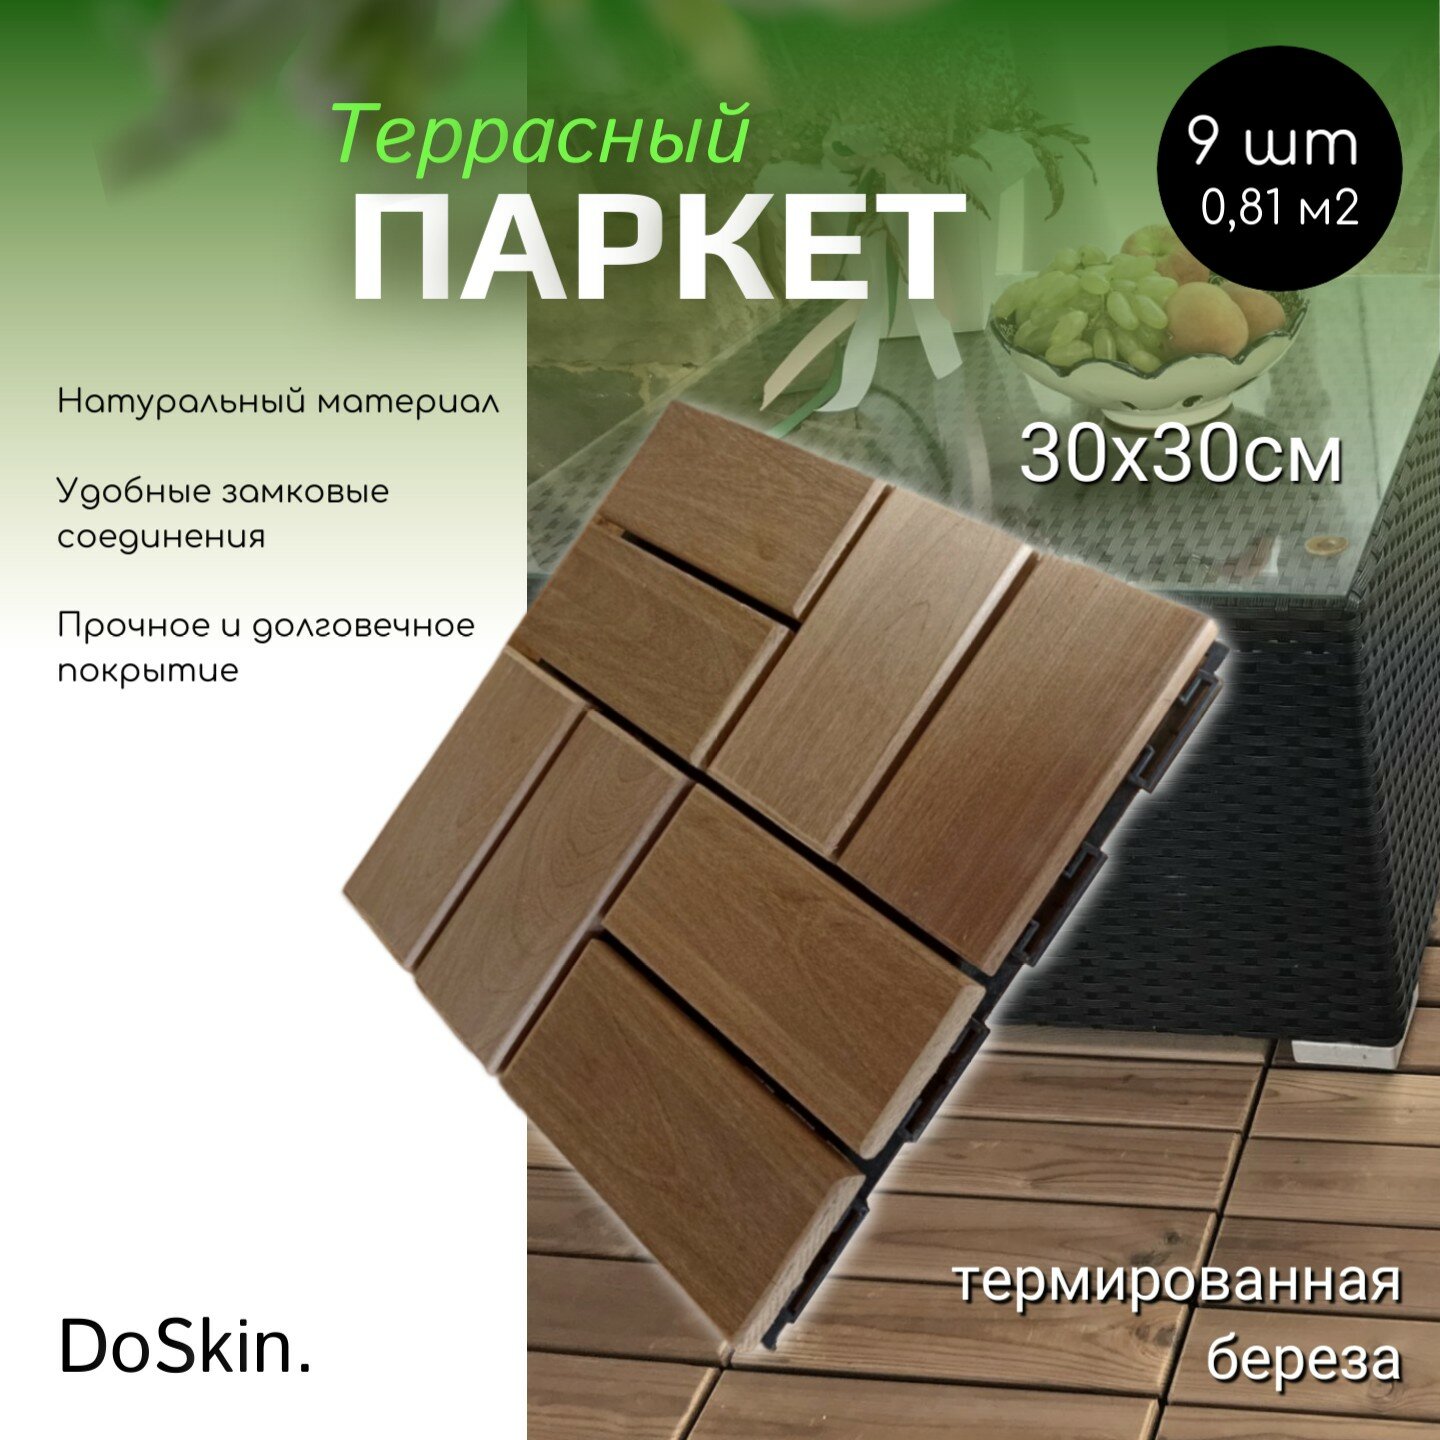 Террасный модульный паркет DoSkin термодерево (береза) 9шт (0,81 м2 ) для сада/бани/бассейна/балкона